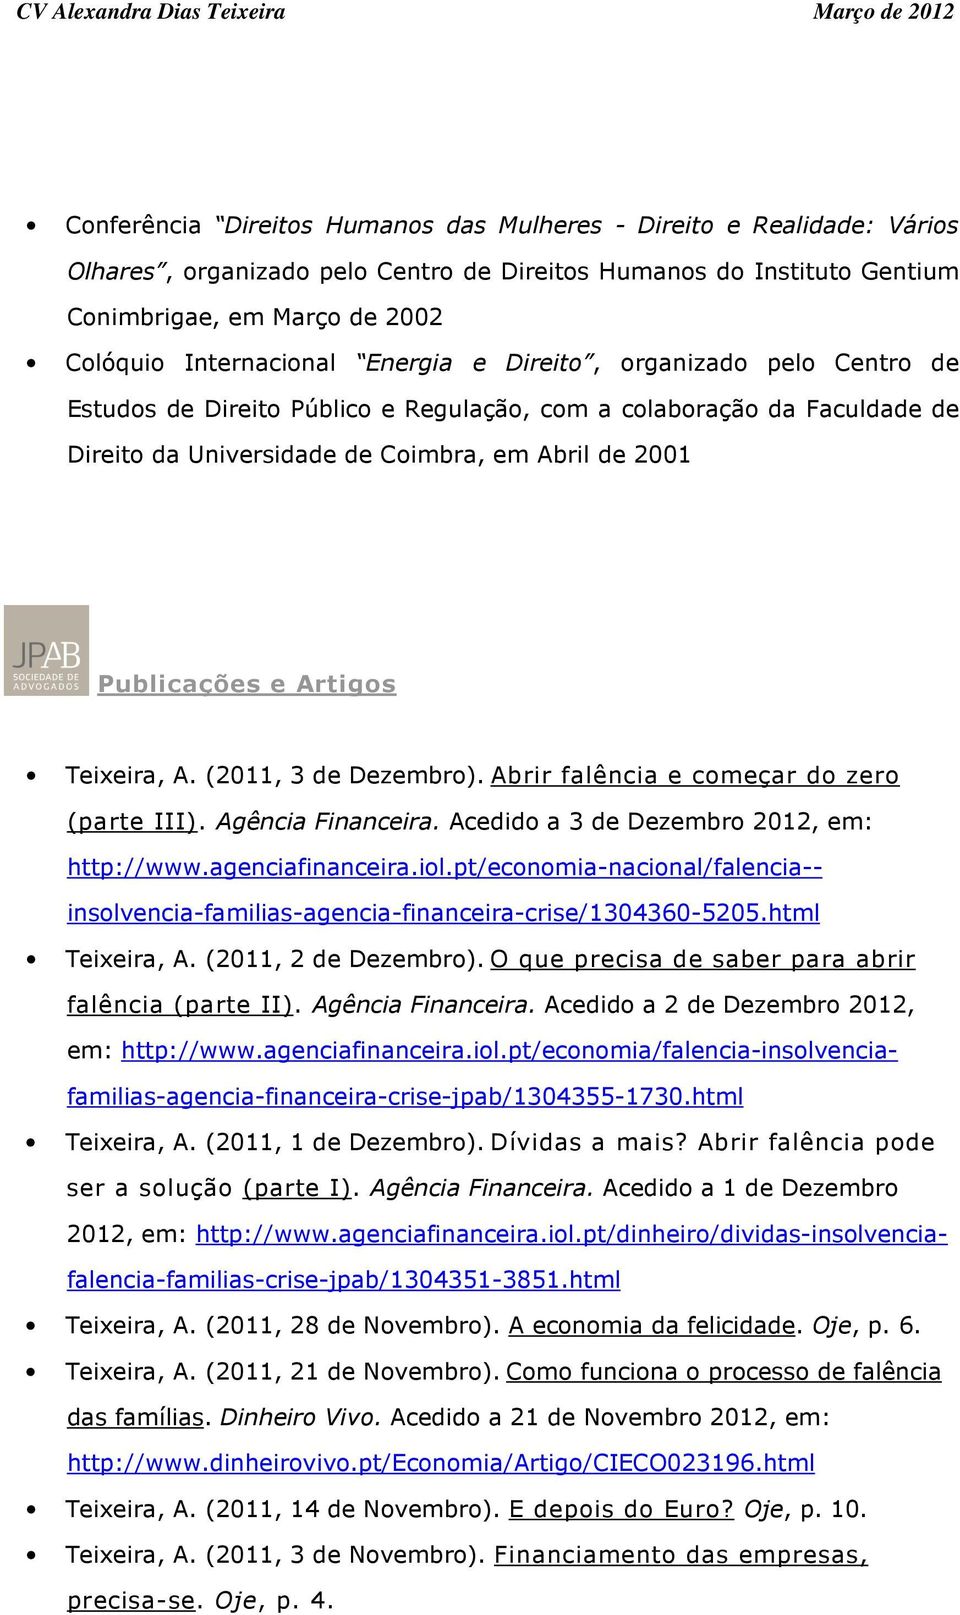 Teixeira, A. (2011, 3 de Dezembro). Abrir falência e começar do zero (parte III). Agência Financeira. Acedido a 3 de Dezembro 2012, em: http://www.agenciafinanceira.iol.